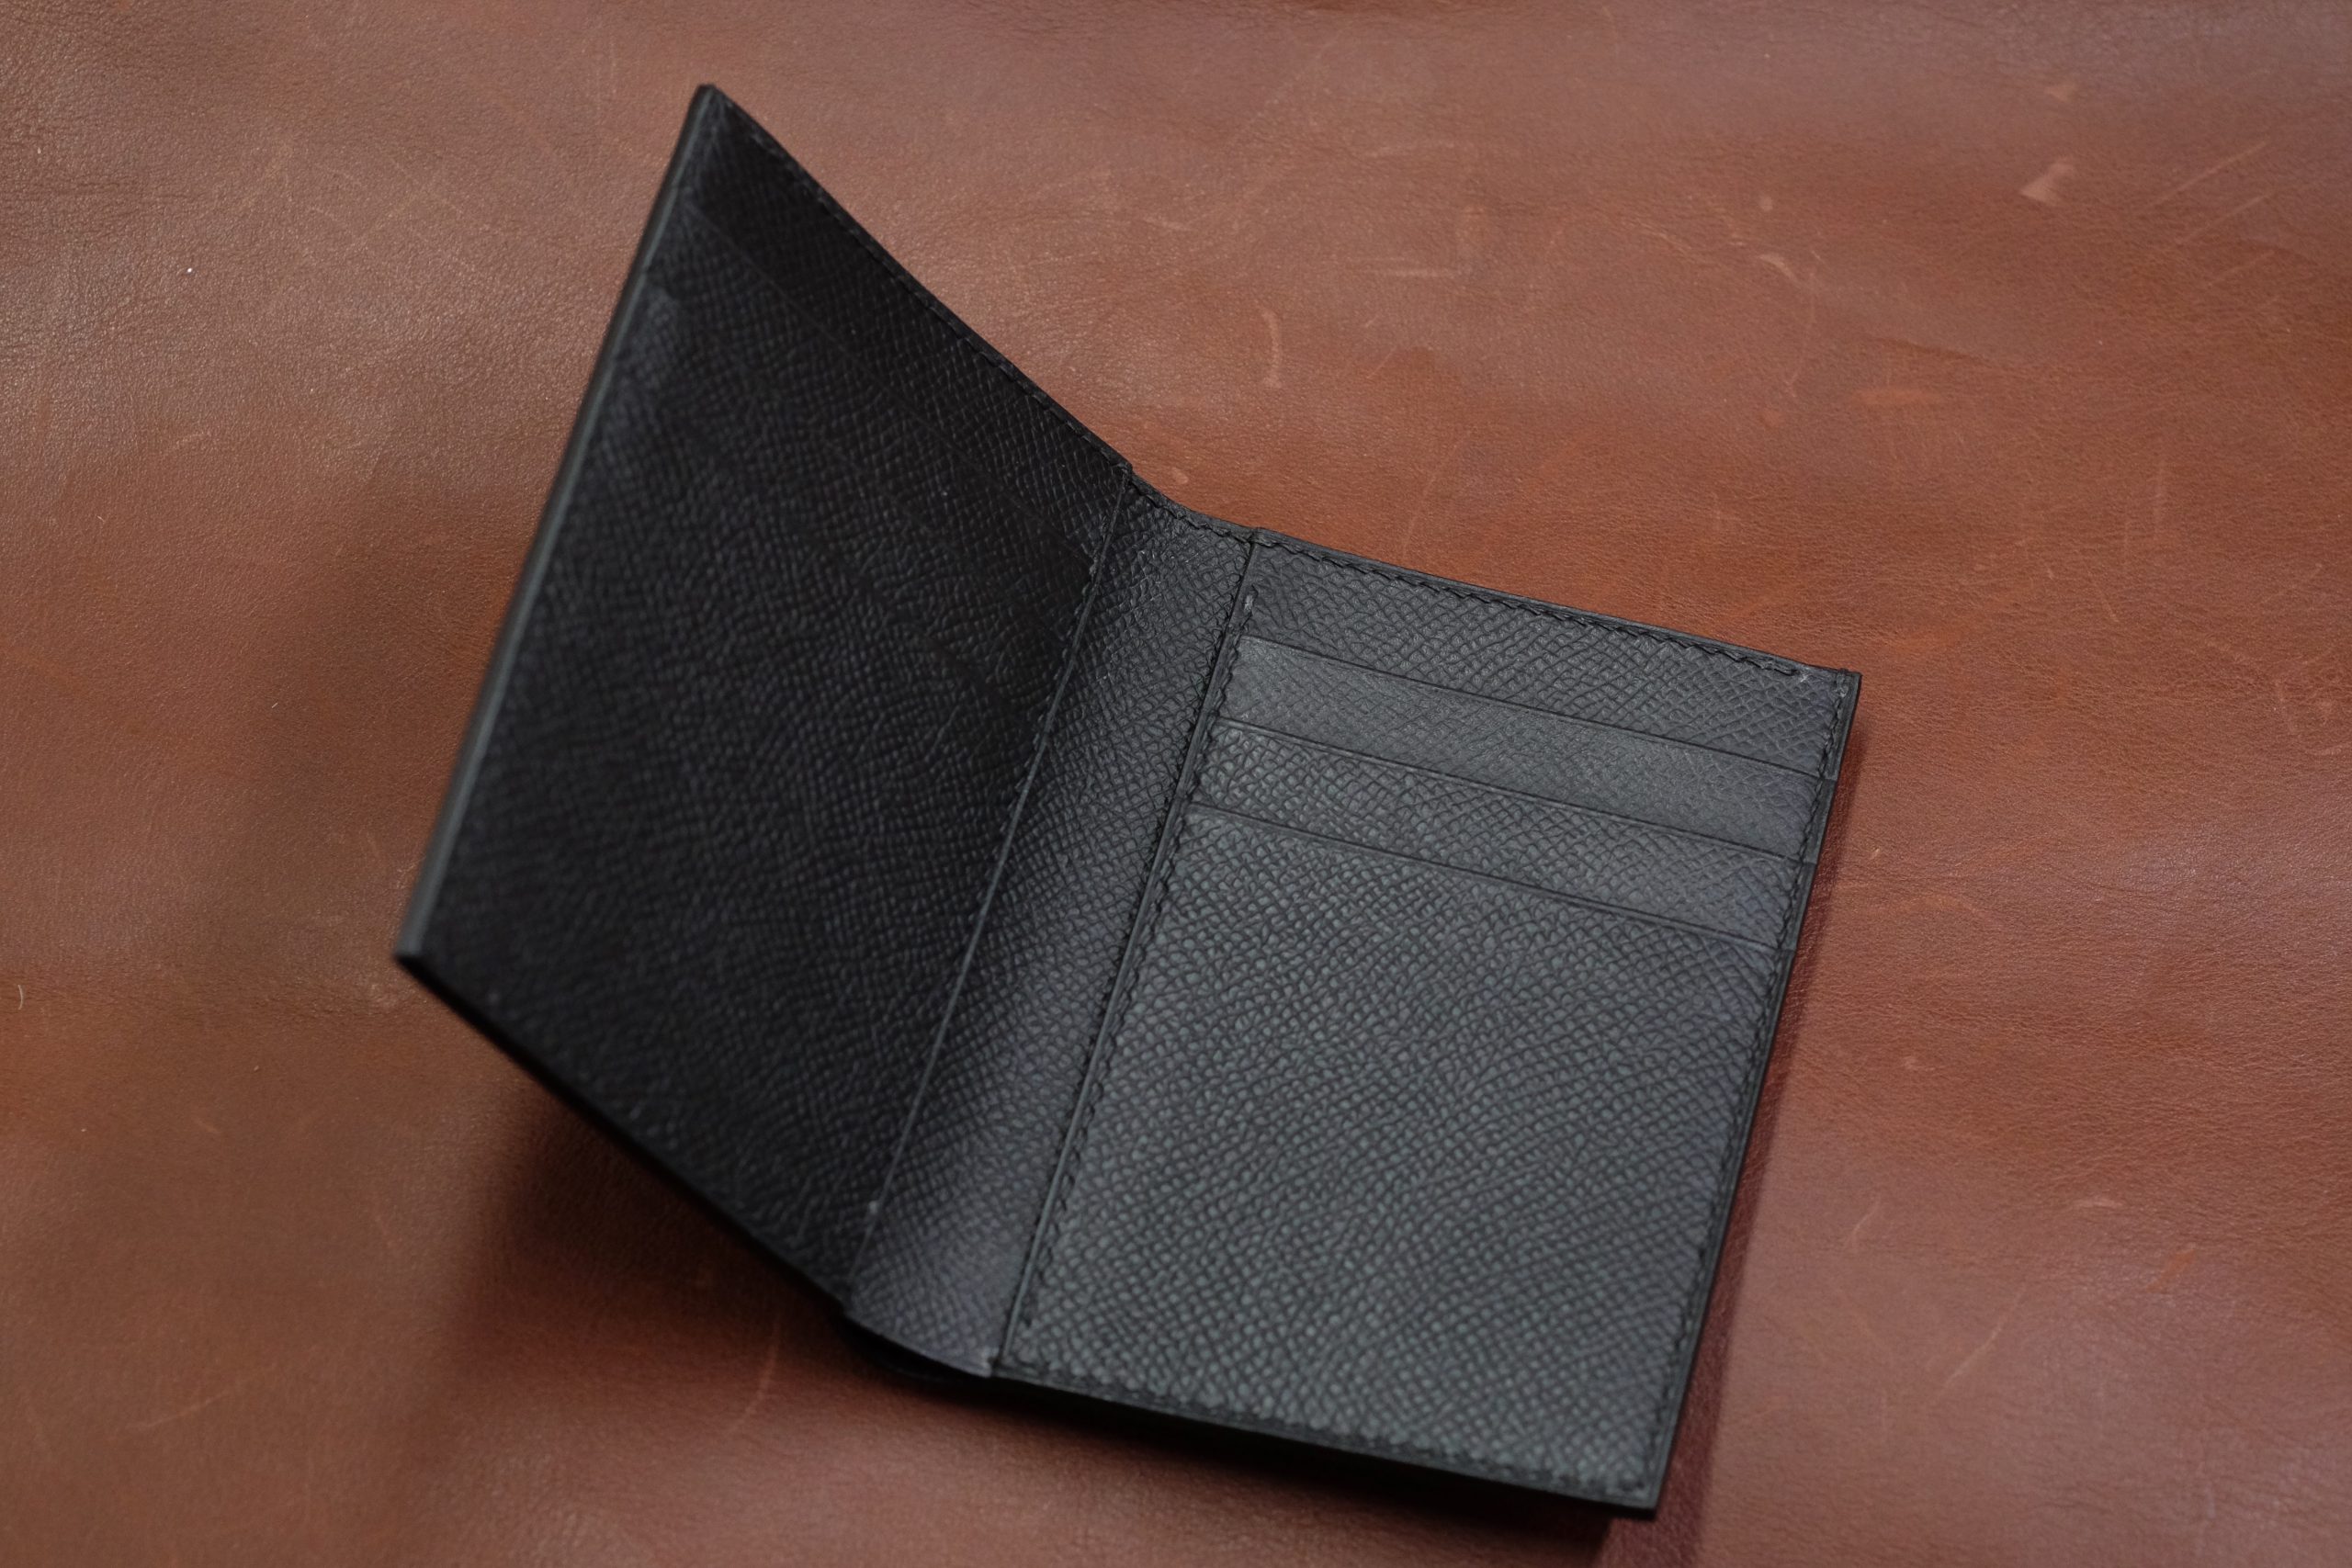 Louis Vuitton Black Leather Vertical Wallet